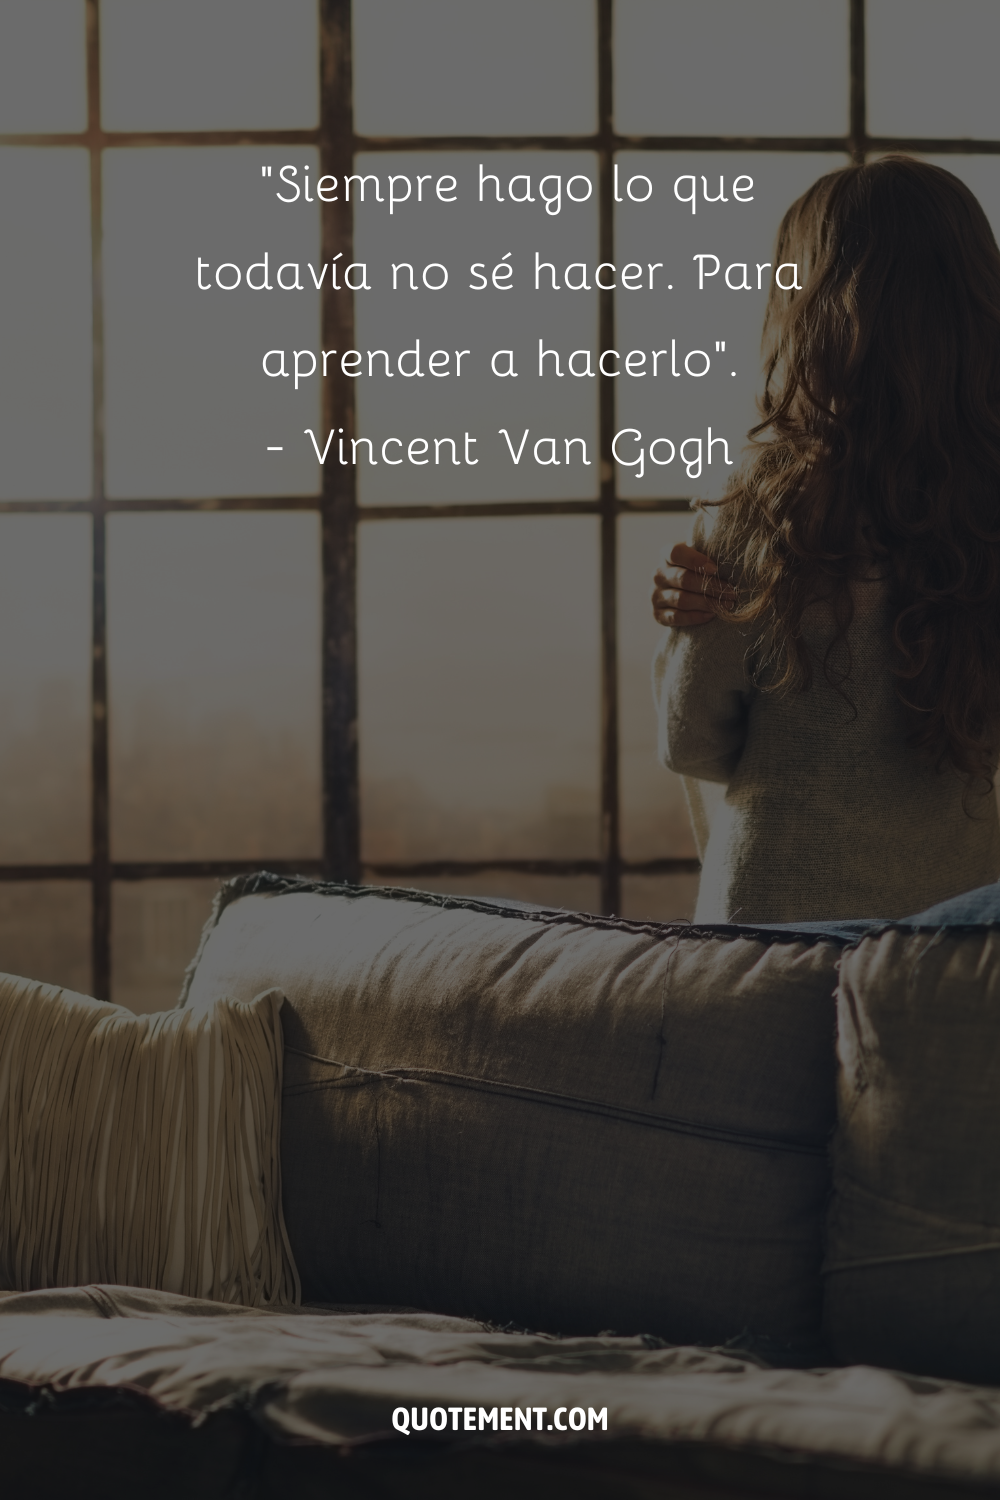 "Siempre estoy haciendo lo que todavía no puedo hacer. Para aprender a hacerlo". - Vincent Van Gogh